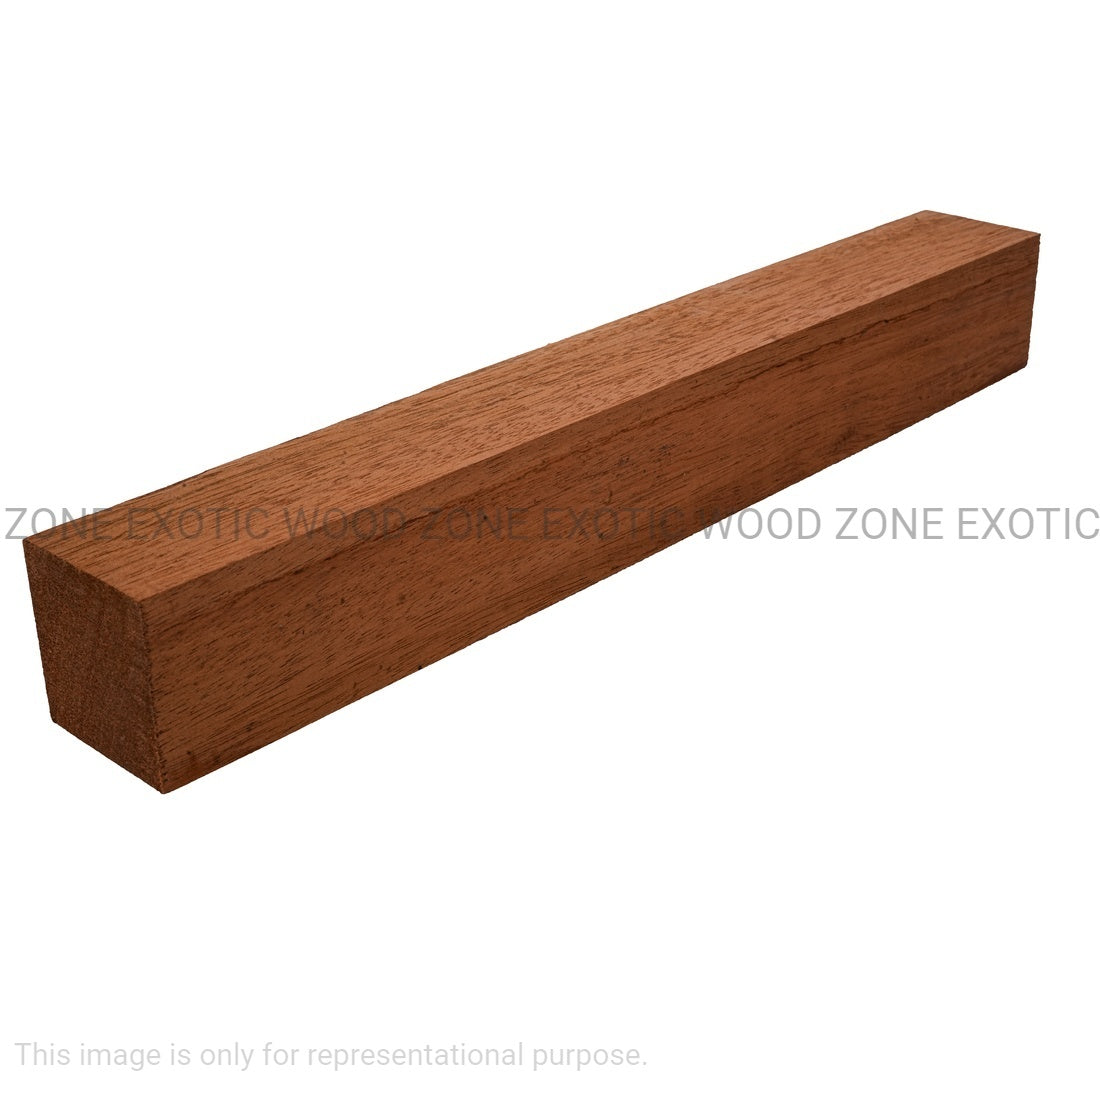 Combo Pack 5, Genuine Honduran Mahogany Turning Blanks 18” x 2” x 2” - Exotic Wood Zone - Buy online Across USA 